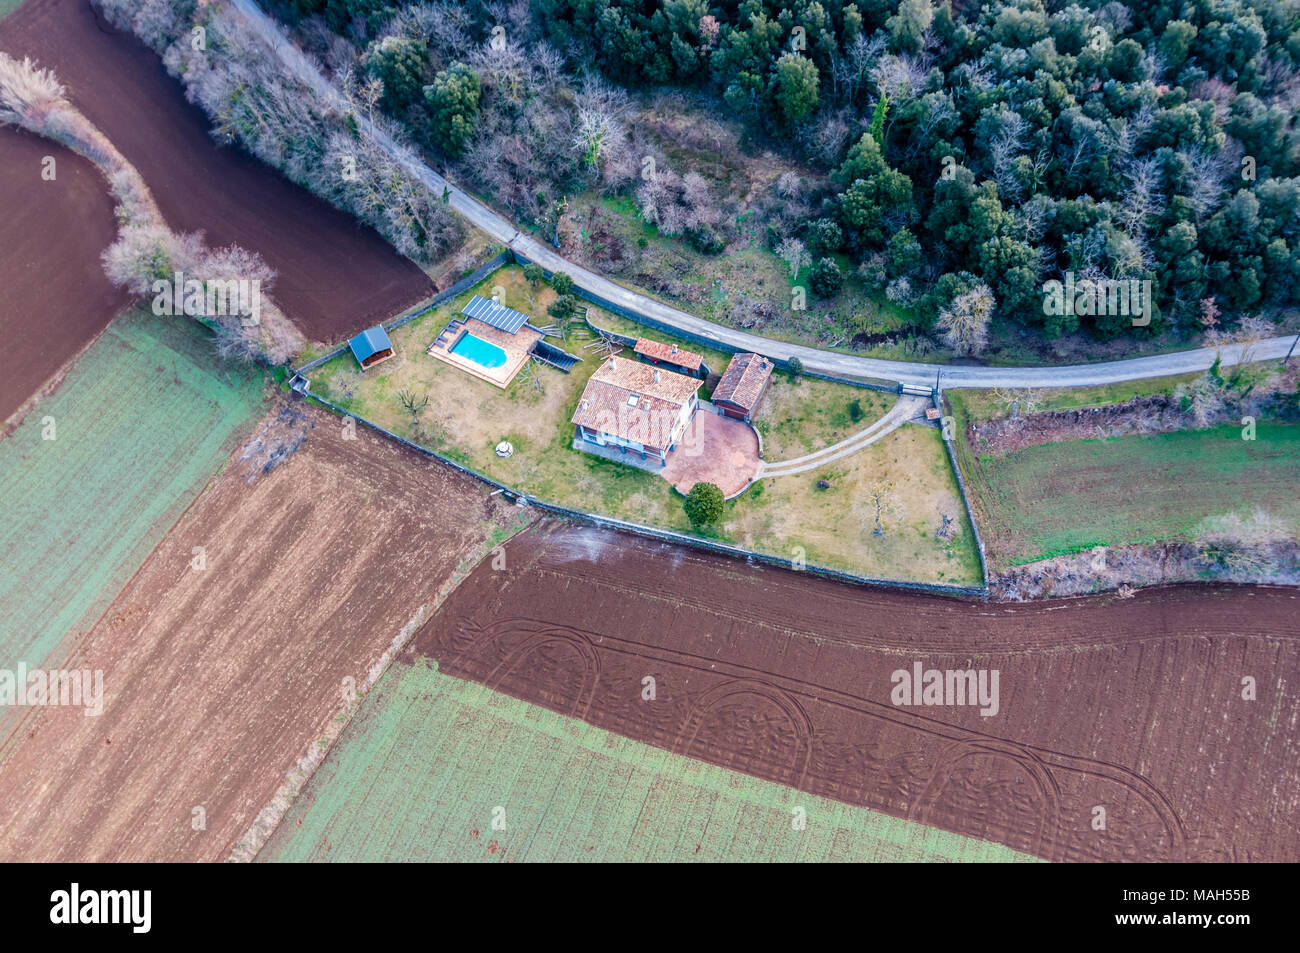 Vista aerea, plot in campagna con la casa e la piscina, Garrotxa, Catalogna, Spagna Foto Stock